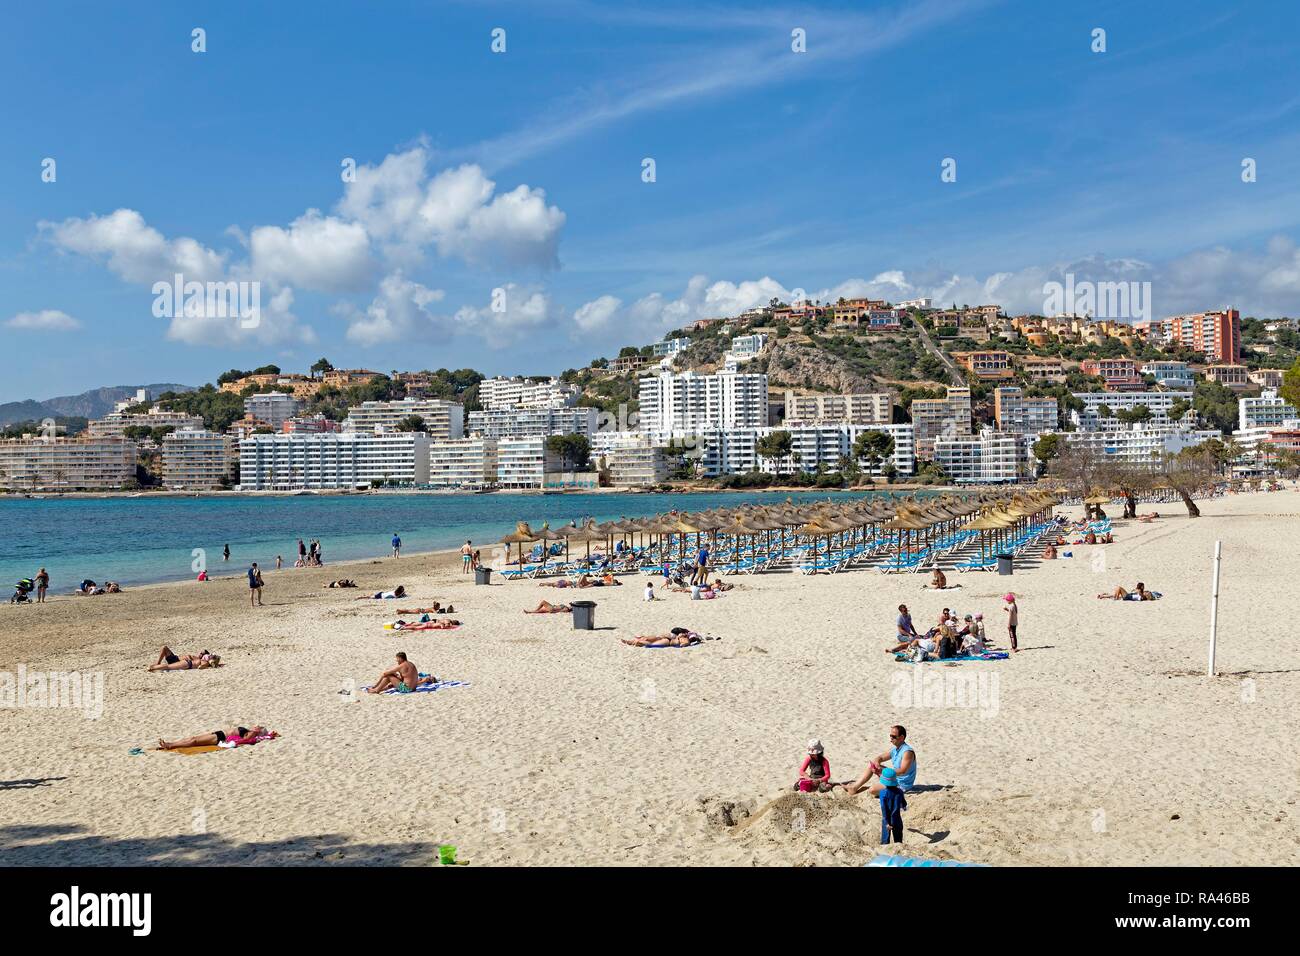 Playa en Santa Ponca, Mallorca, España Foto de stock